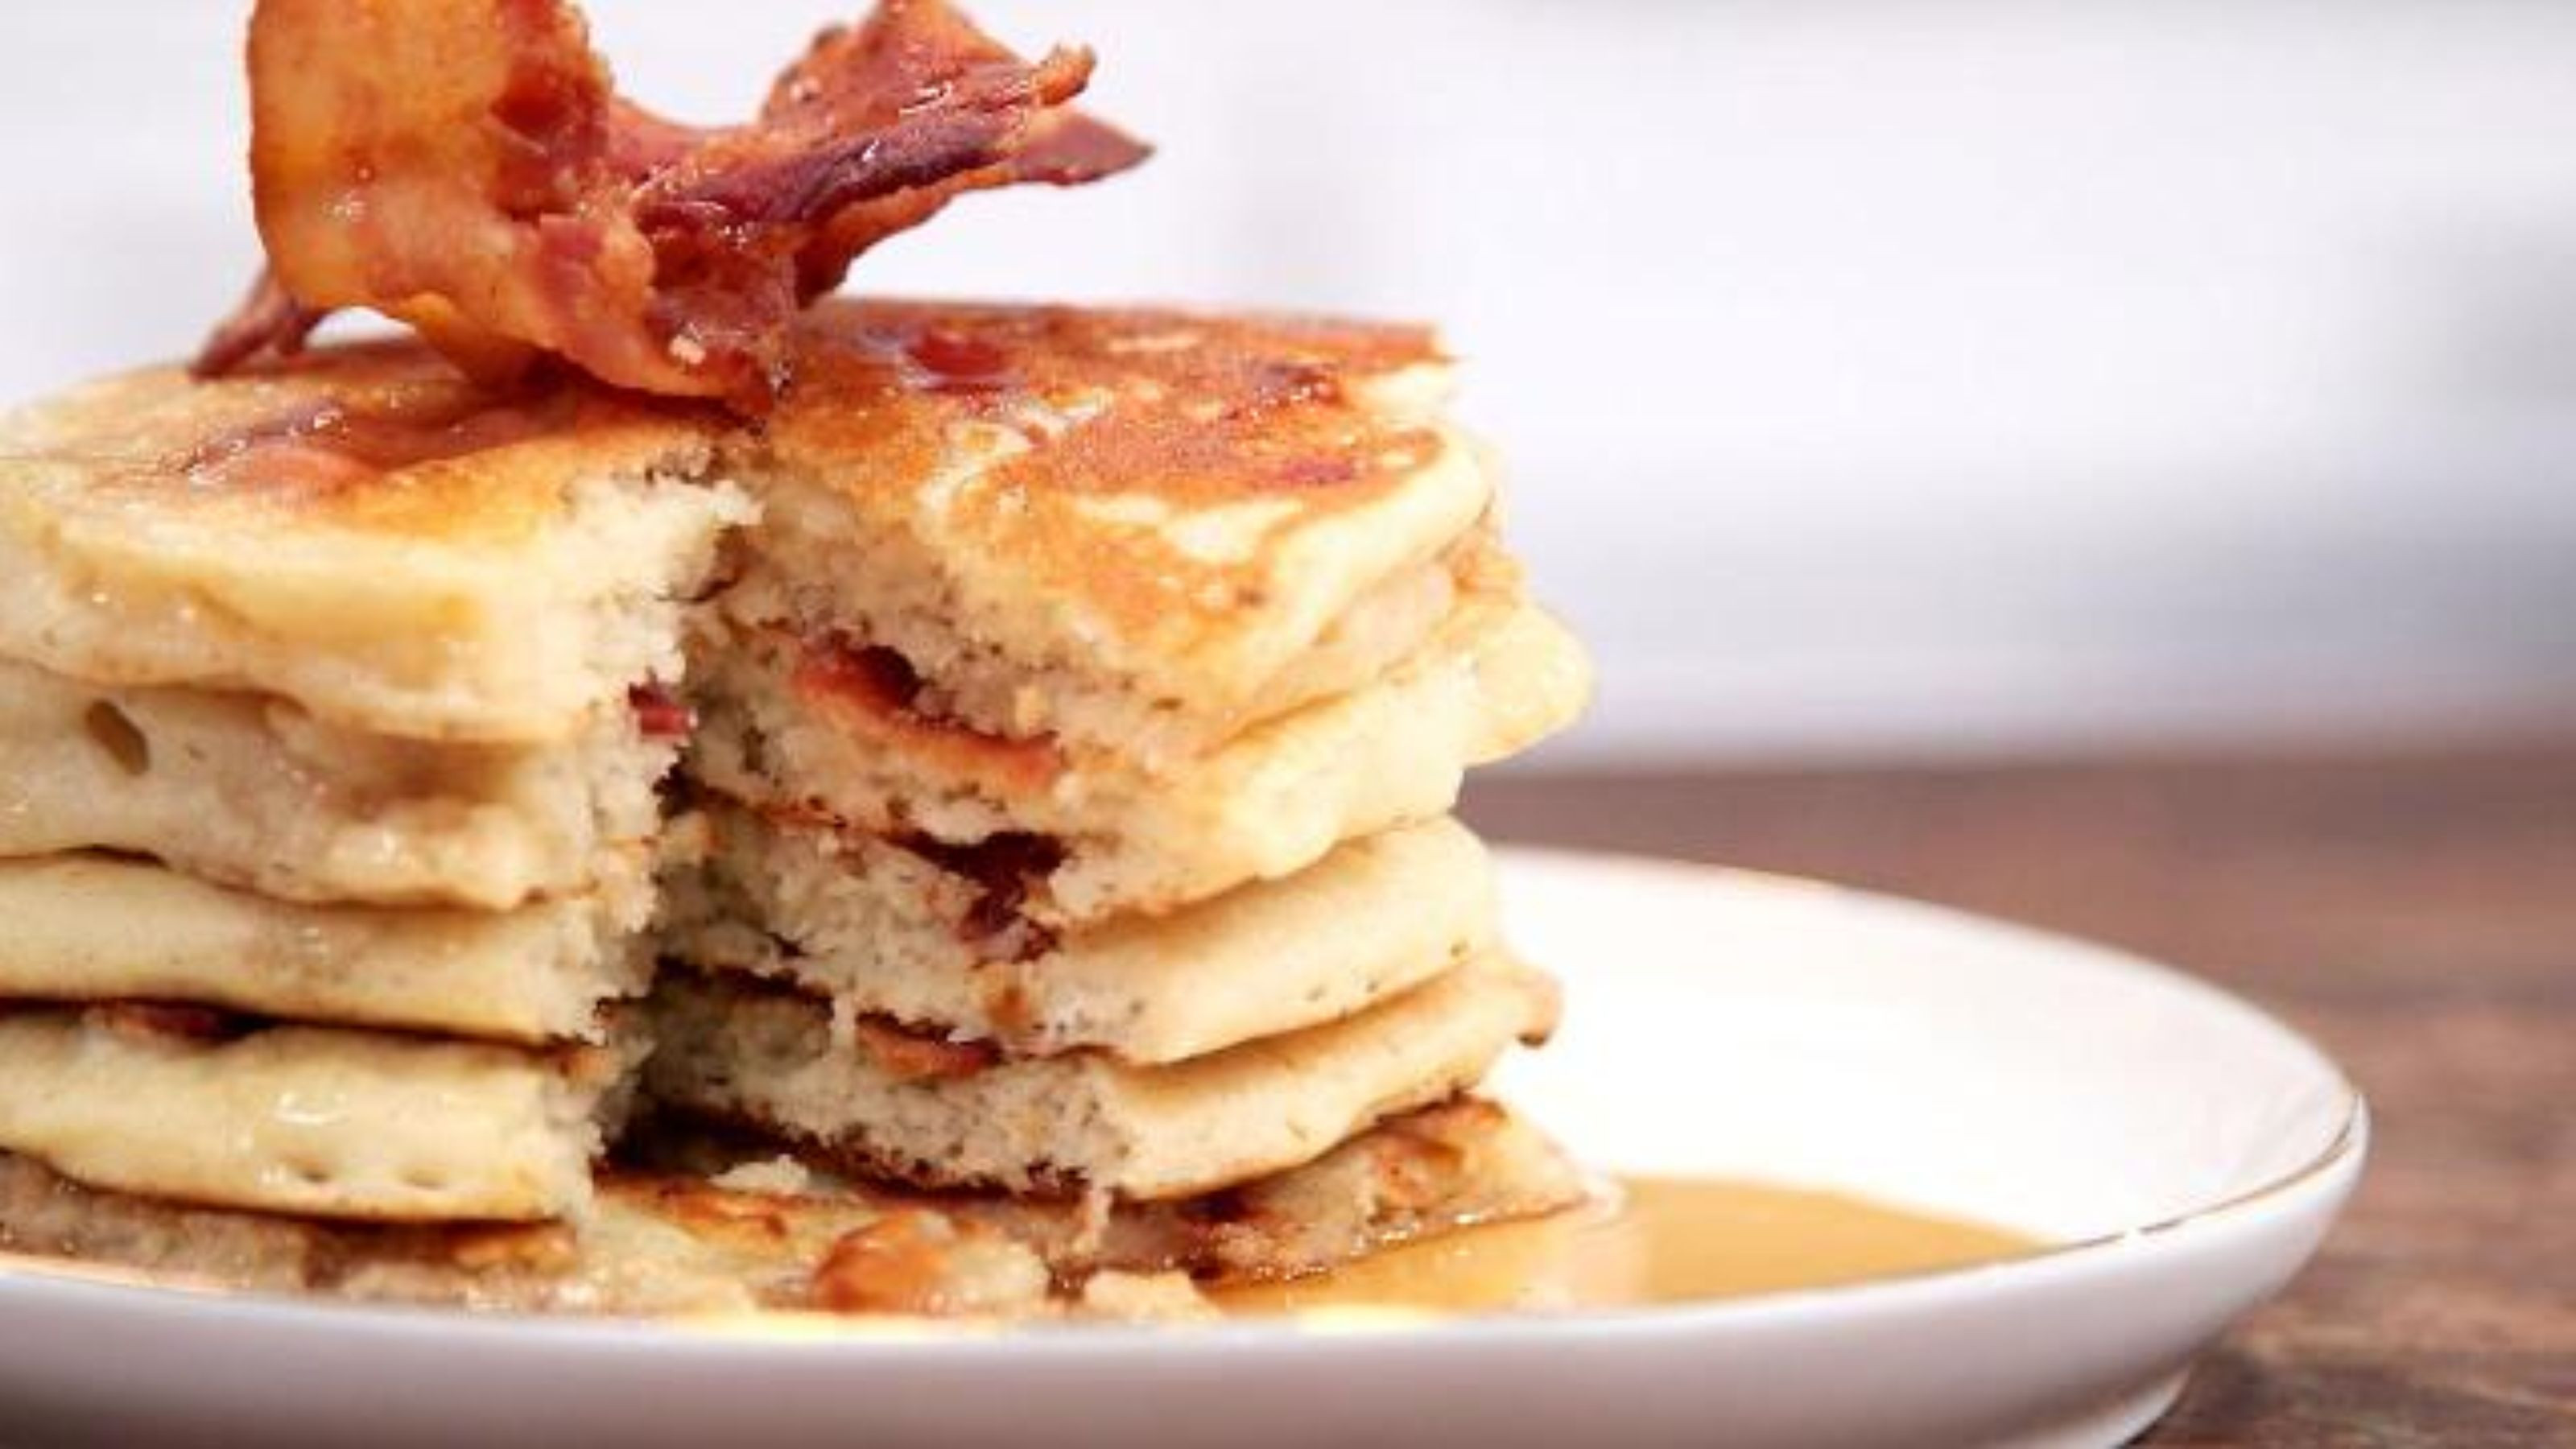 Makin Bacon Pancakes
 Makin bacon pancakes